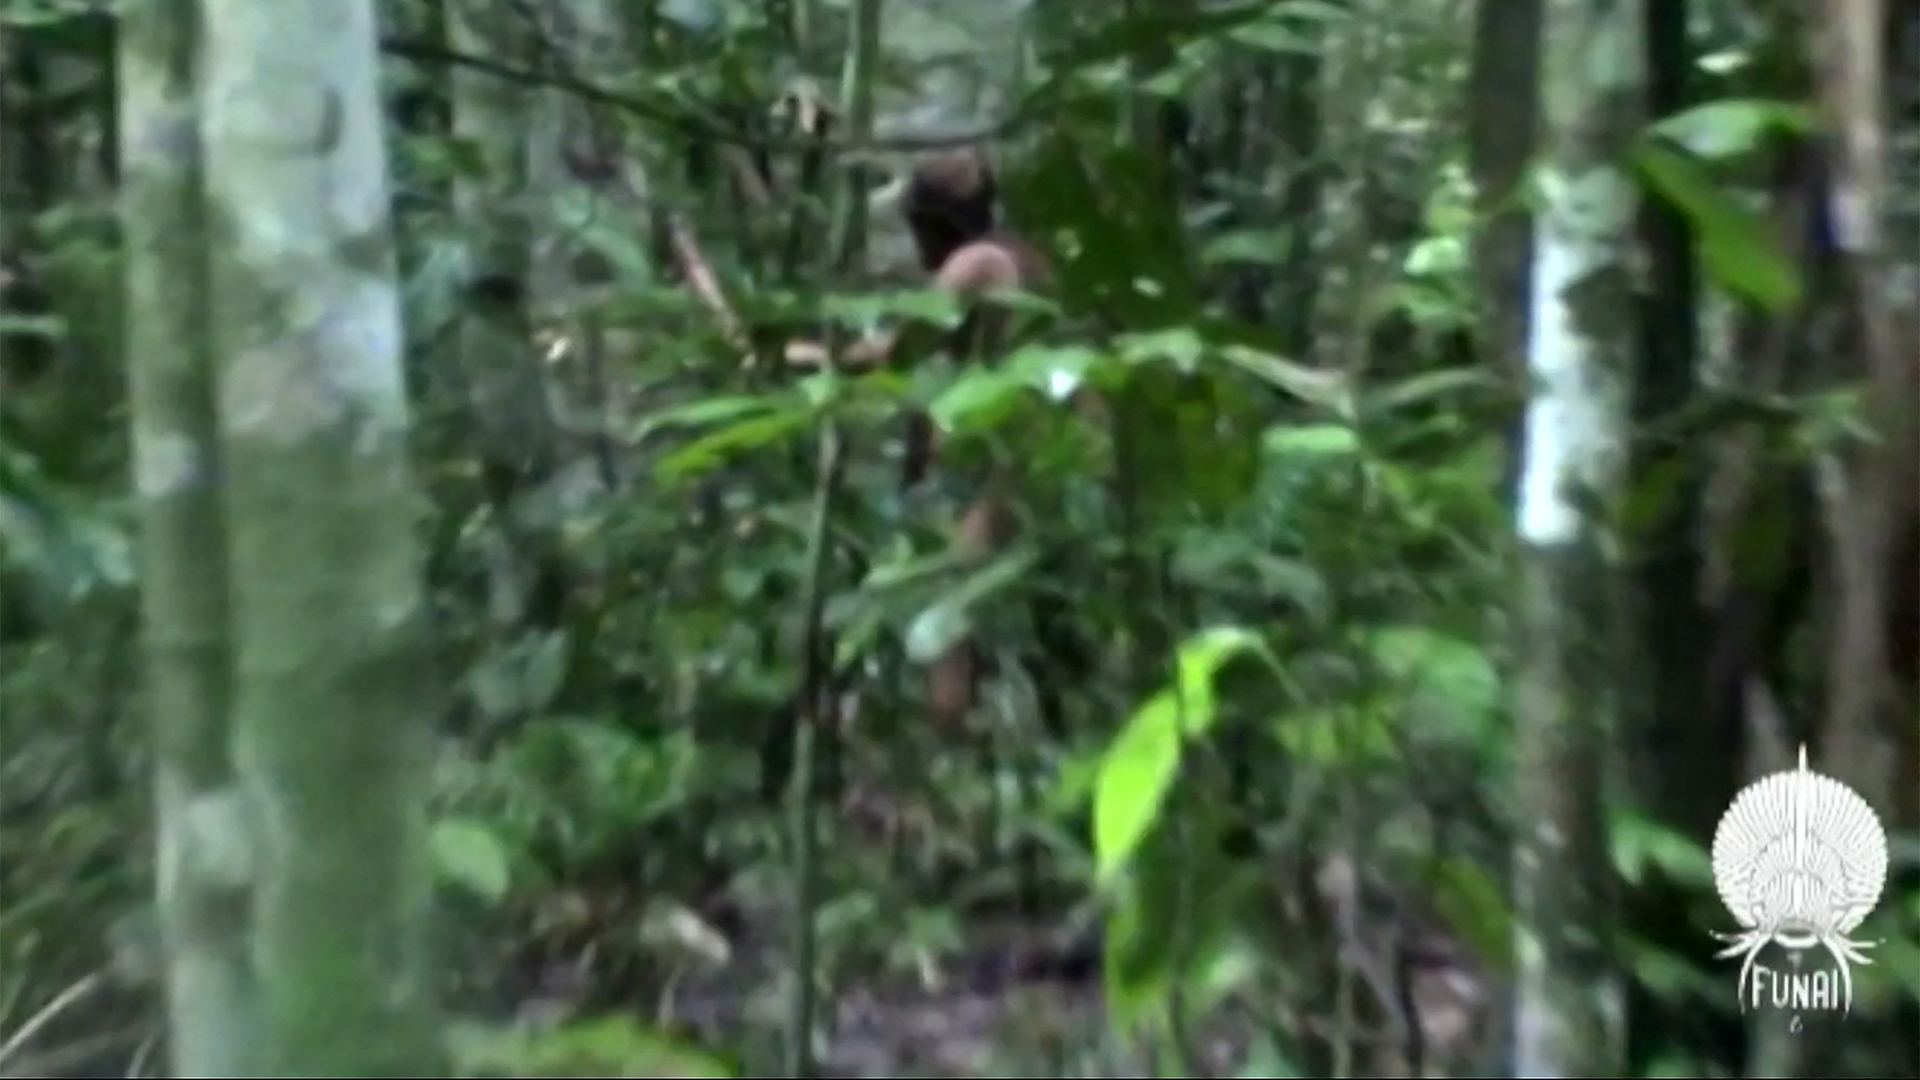 Ein Ausschnitt aus einem Video, das von der brasilianischen Stiftung FUNAI veröffentlicht wurde, zeigt einen Stammesangehörigen, der als letzter bekannter Überlebender einer isolierten Amazonasgemeinschaft in Brasilien gilt und als "Tanaru" bekannt ist.